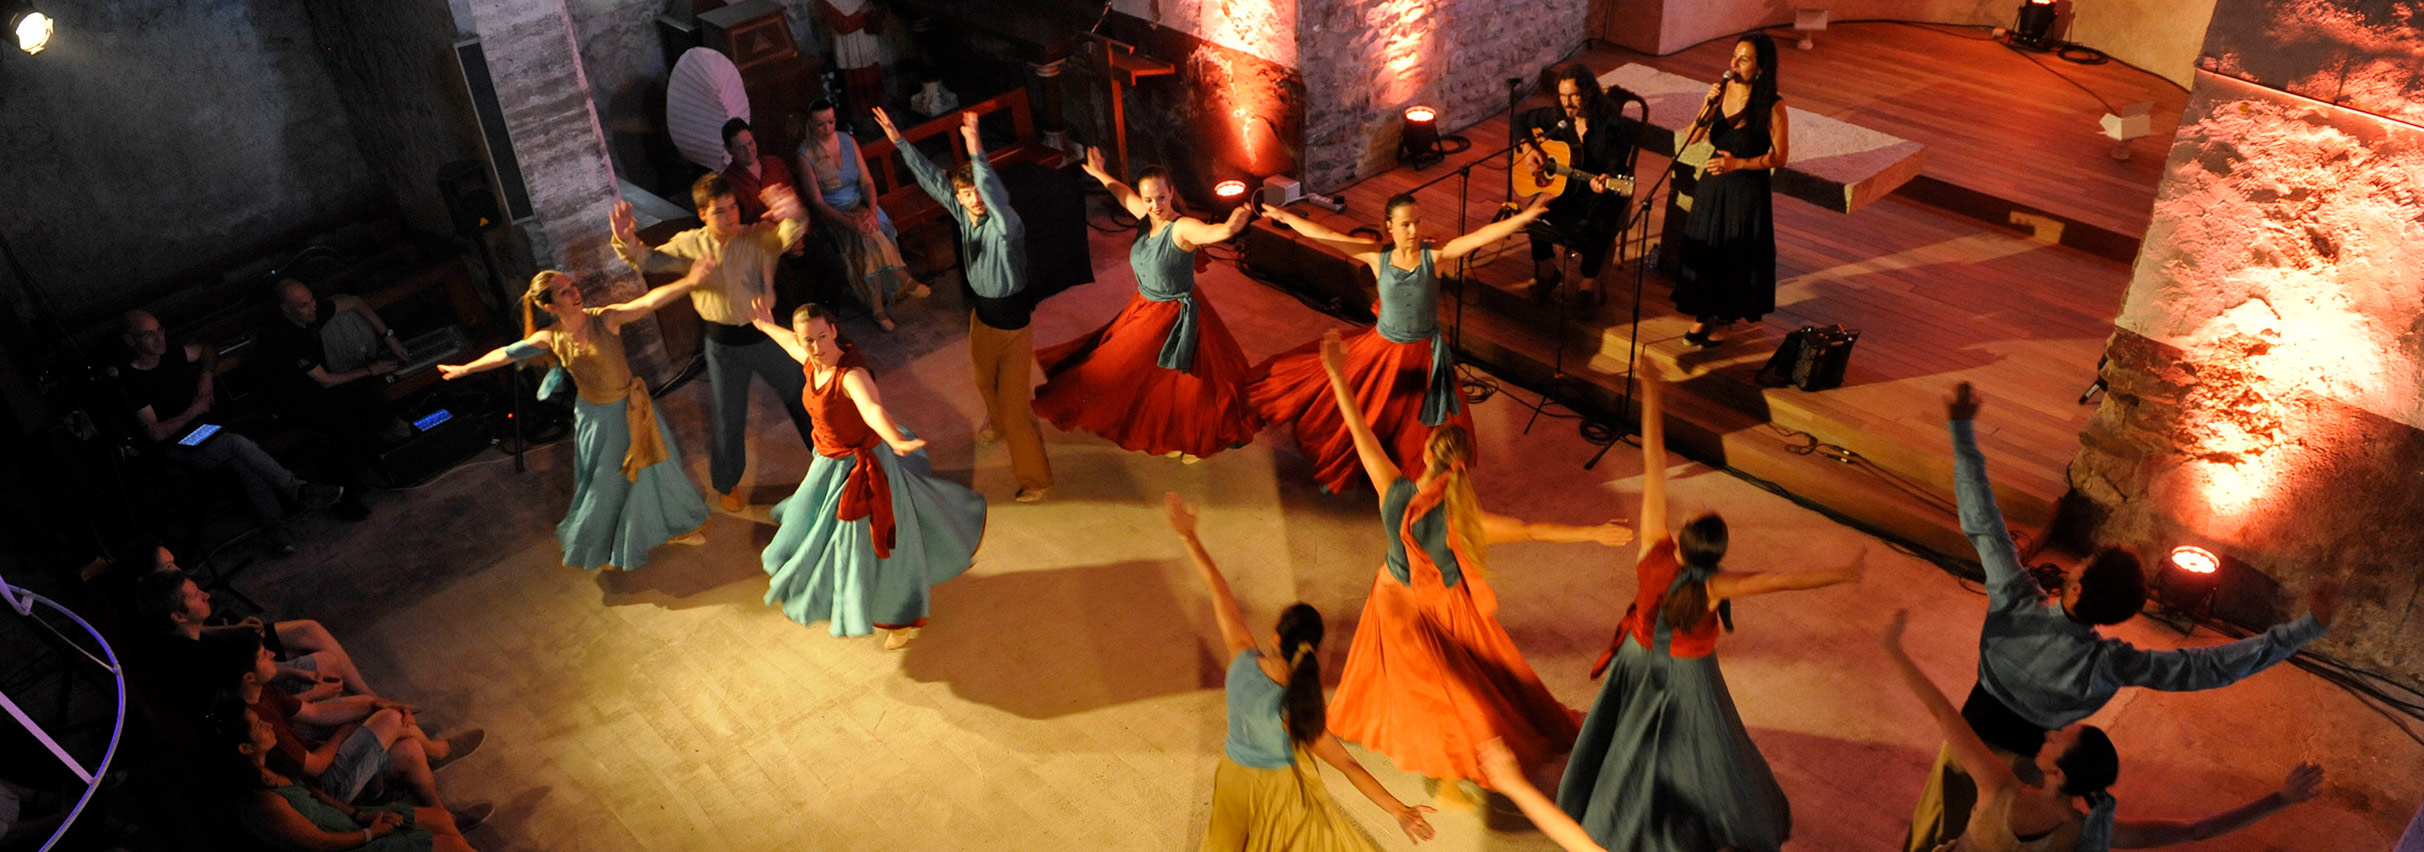 La creació contemporània dialoga amb la cultura d'arrel durant els sis dies de durada del Dansàneu - DANSÀNEU - FESTIVAL DE CULTURES DEL PIRINEU